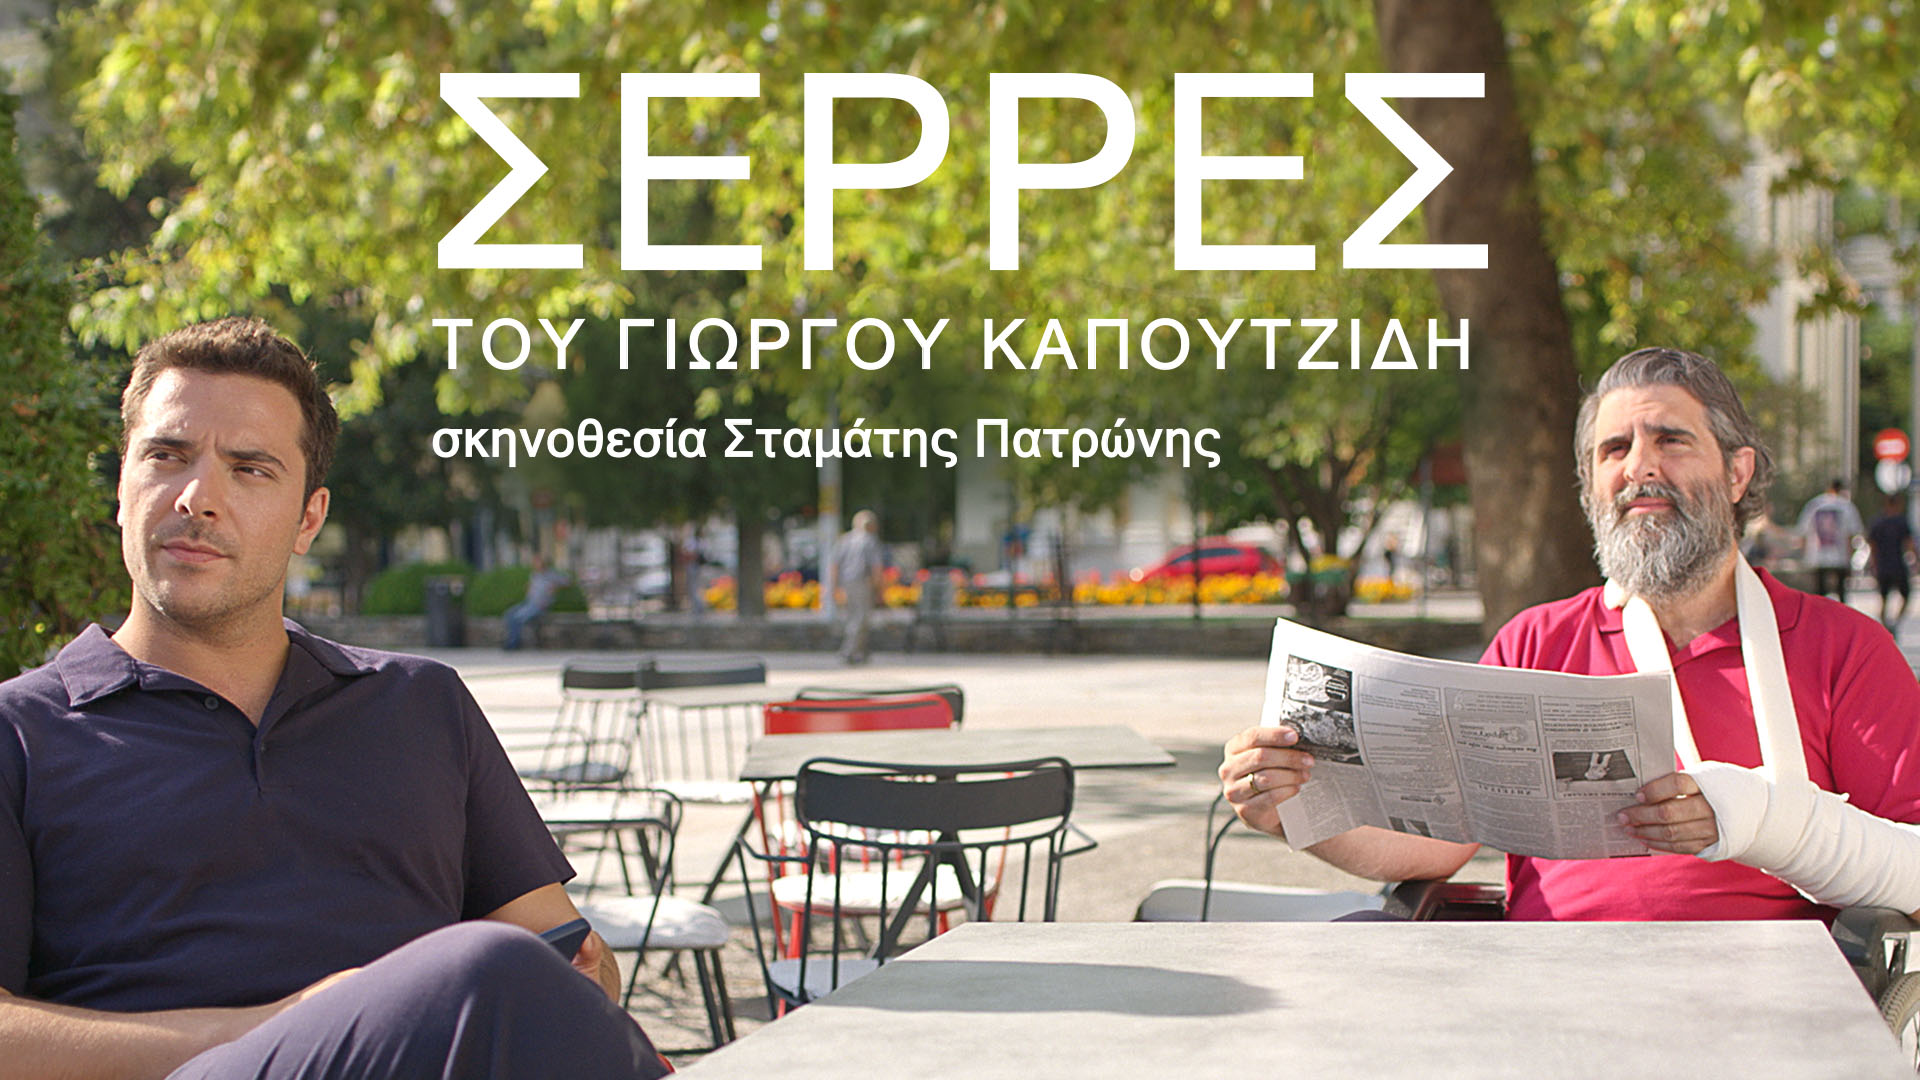 Ελληνικές μίνι σειρές στον ΑΝΤ1 που αξίζει να δούμε